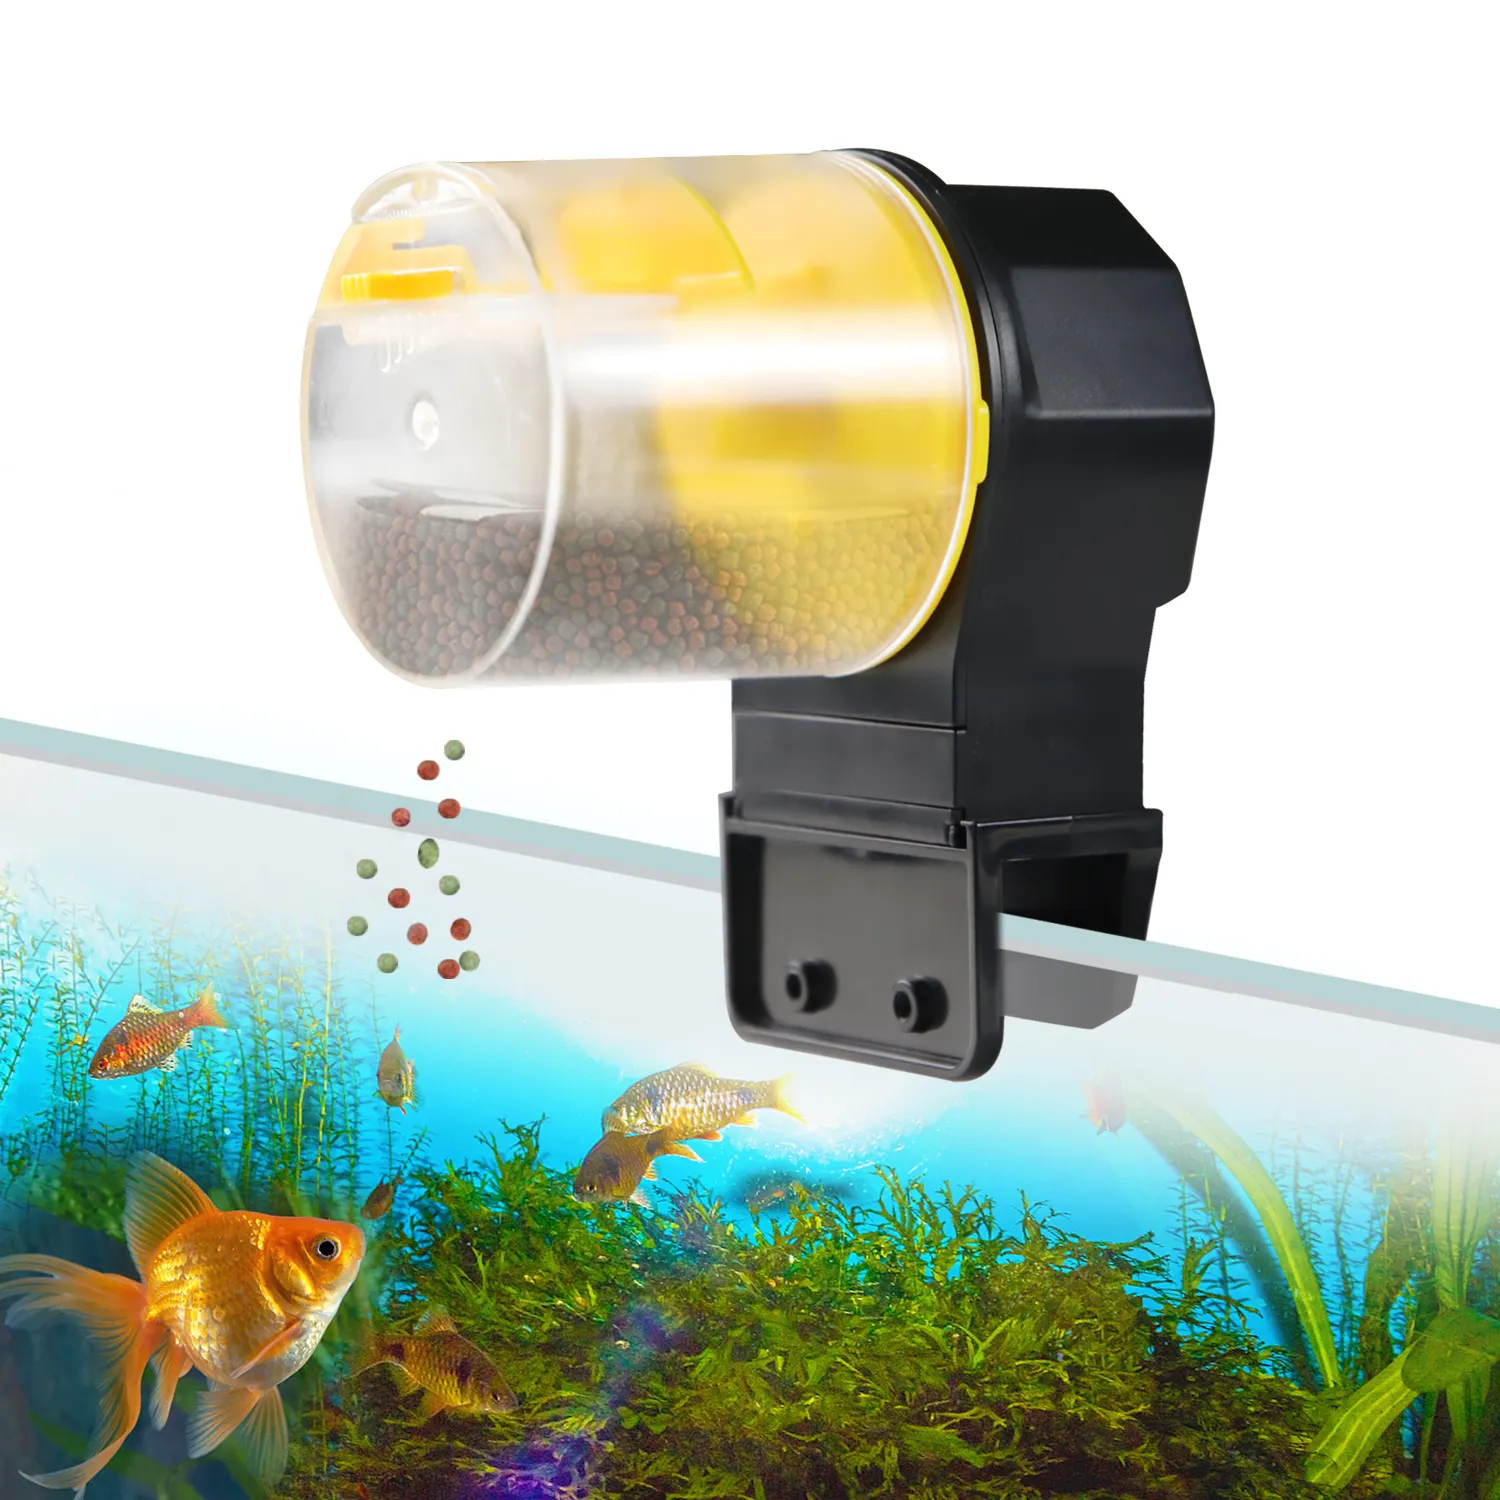 Tratador automático para peixes, alimentador com temporizador para aquário